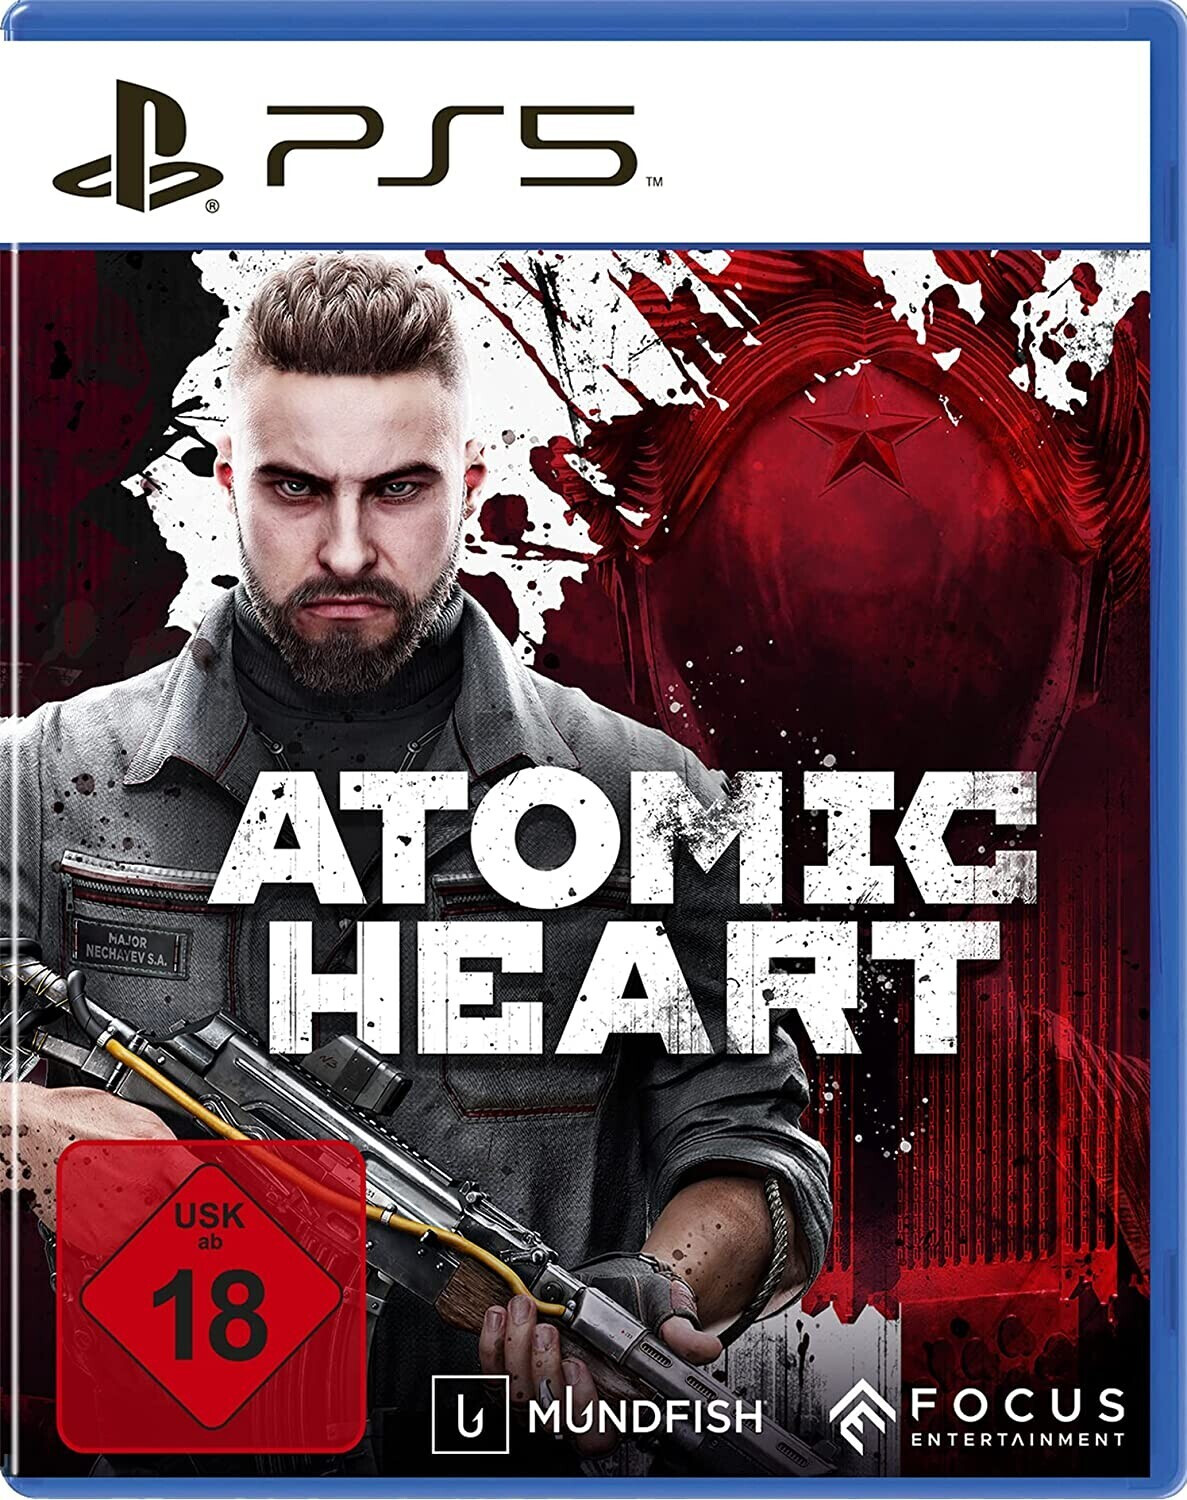 Atomic Heart auf Metacritic: Für ein Shooter-Highlight hat's nicht gereicht